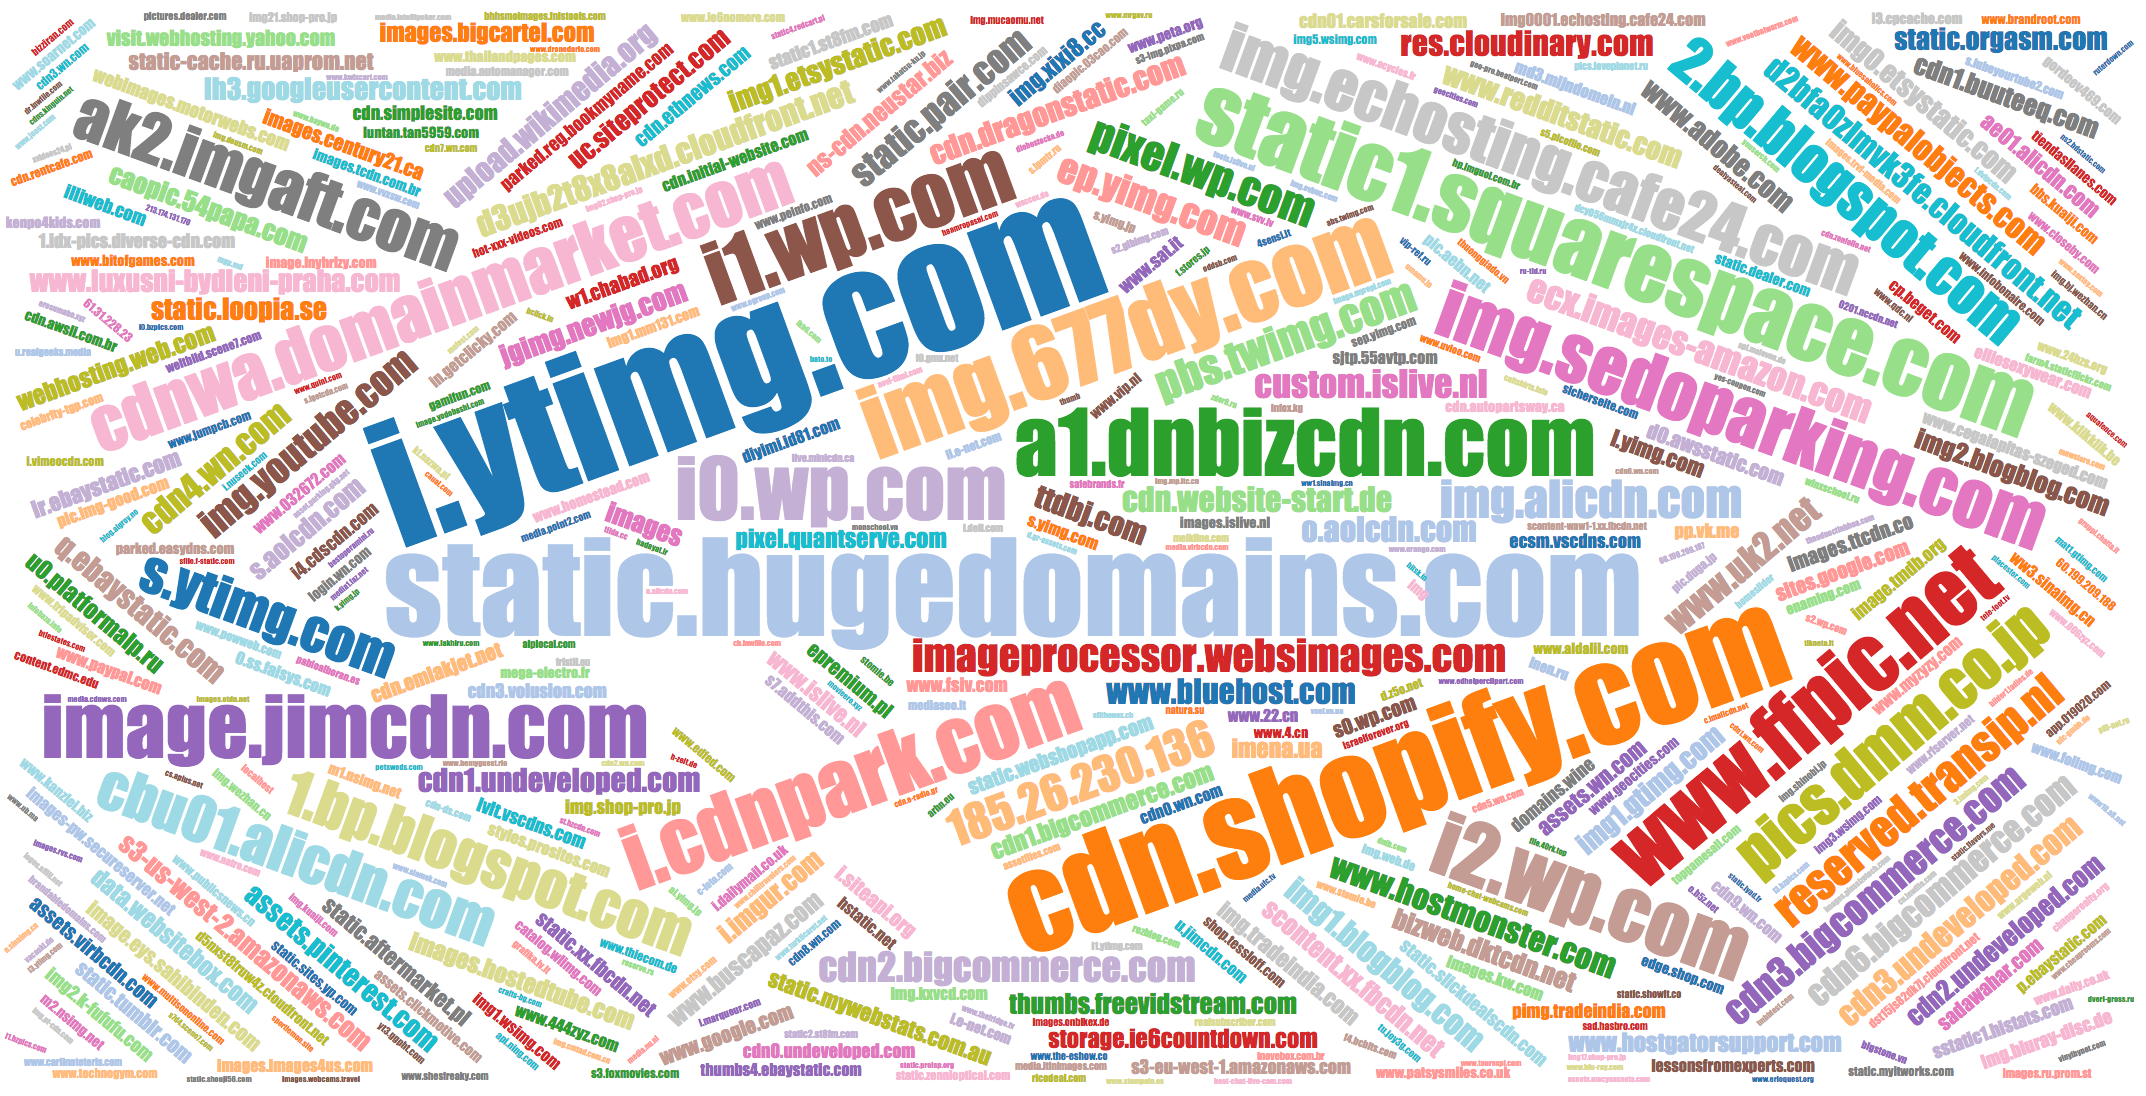 Popular names of IMG domains q.ebaystatic.com, qtaaabbbzy1.mydcfe.com, etc.